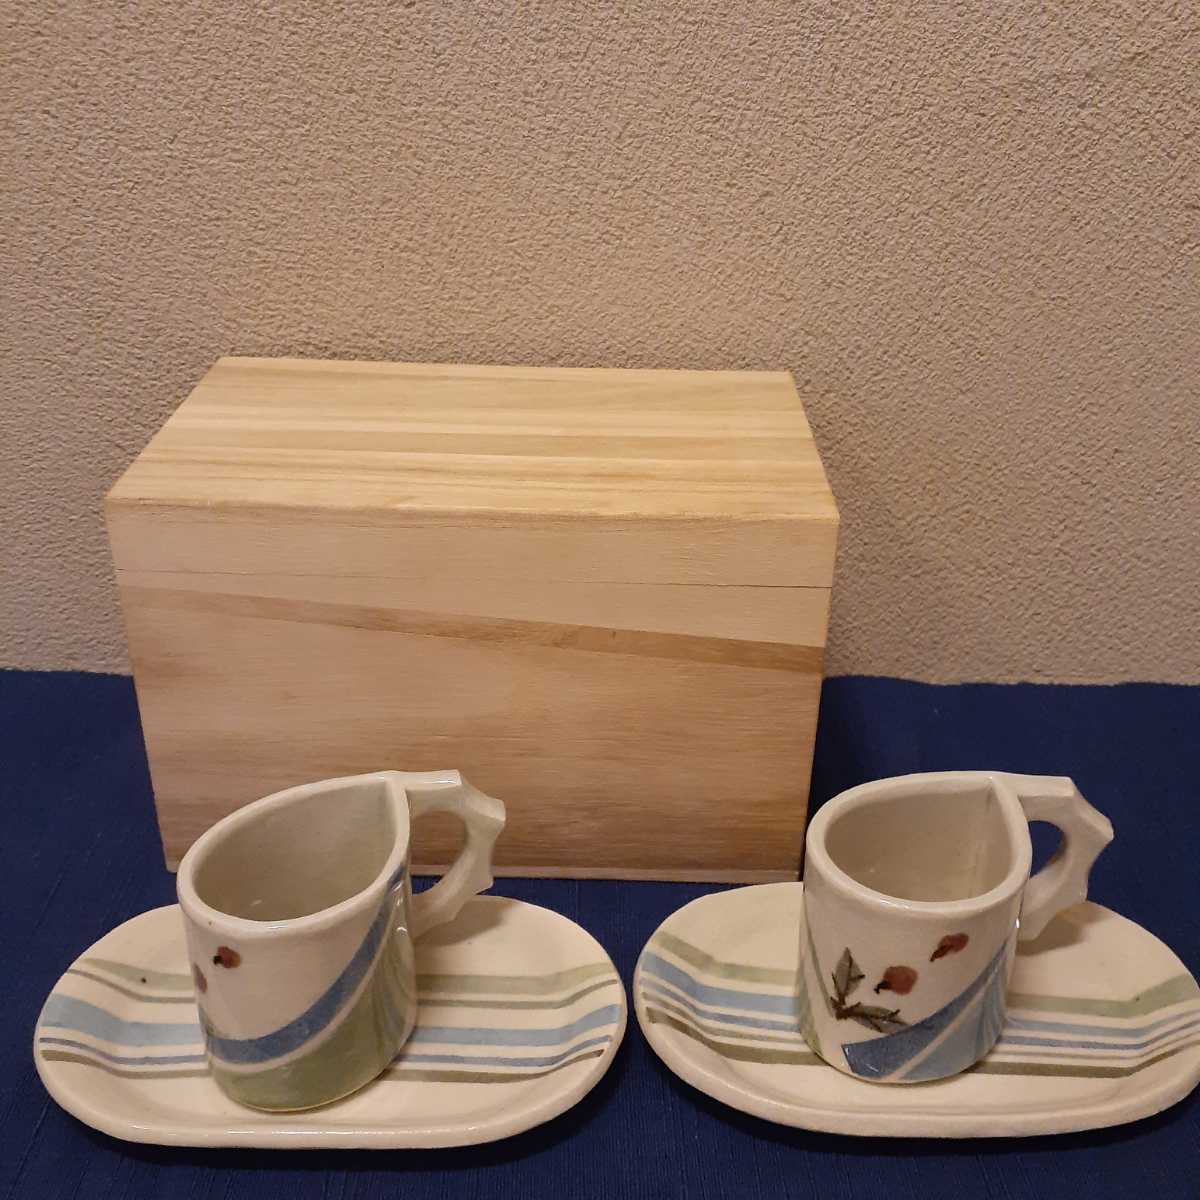 珈琲茶碗 コーヒーカップ 作家物 共箱 皿約17.5cm×10.7cm×1.5cm カップ約10cm×6.5cm×6cm_画像9